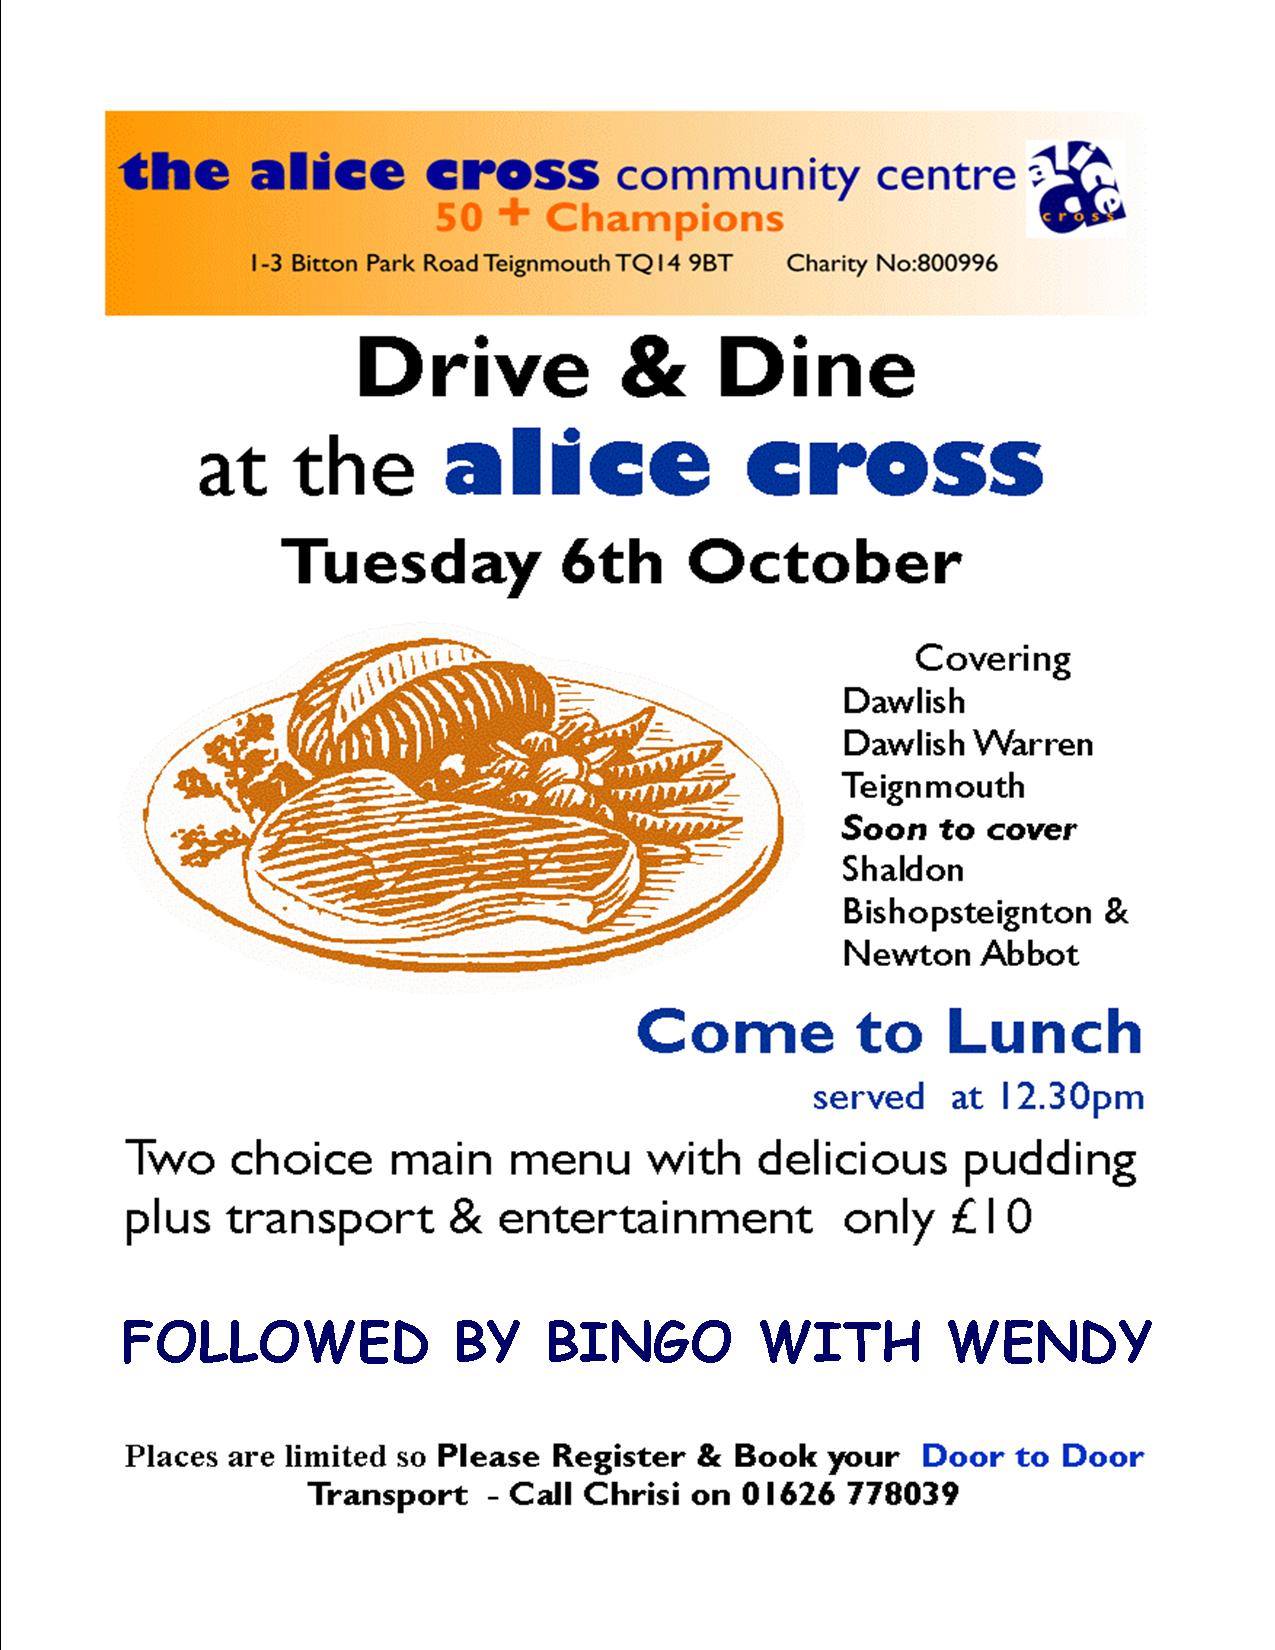 DRIVE & DINE at the Alice Cross centre in Shaldon Devon